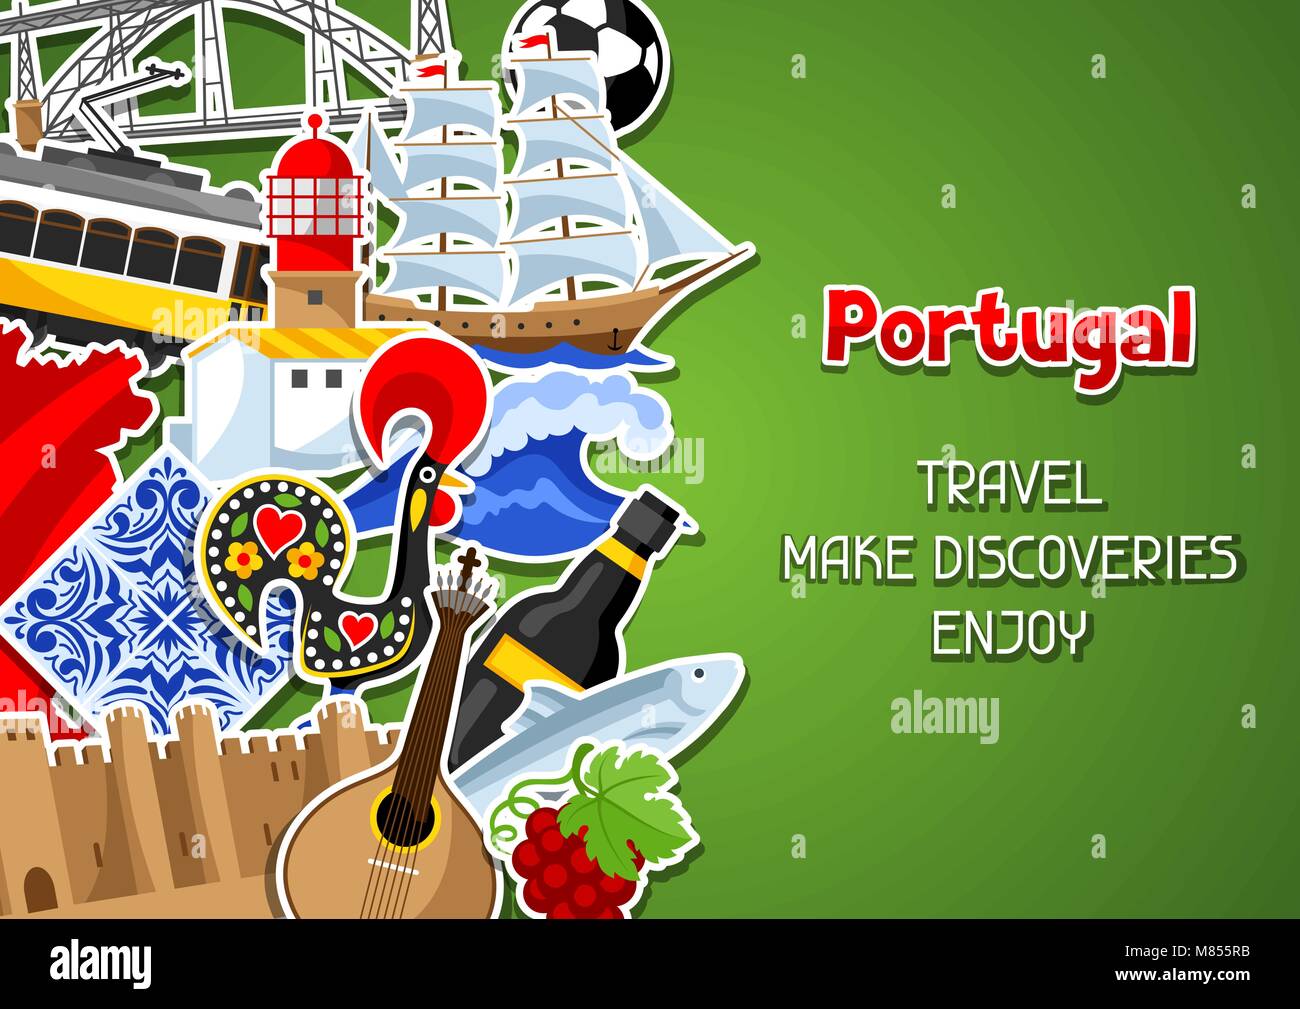 Portugal contexte avec des autocollants. National portugais symboles traditionnels et d'objets Illustration de Vecteur